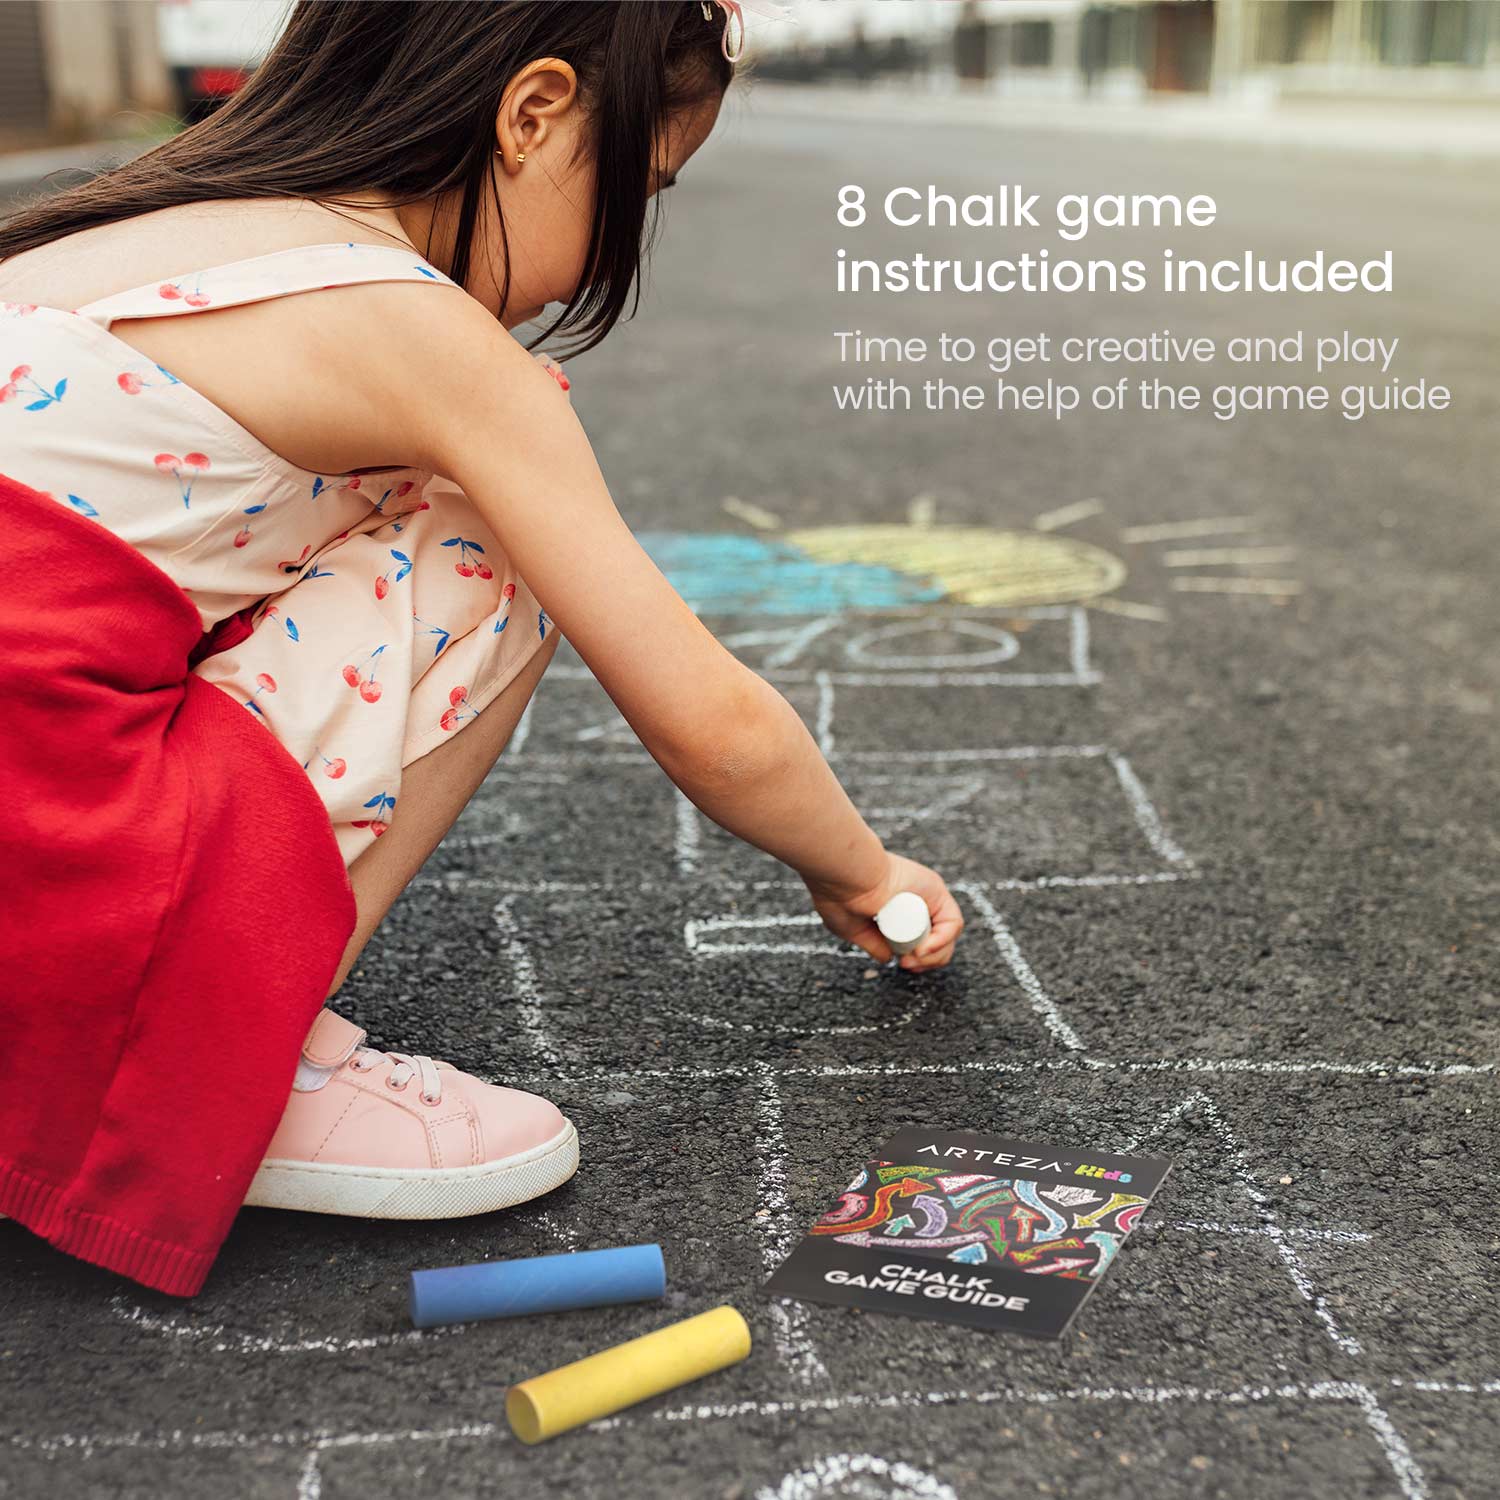 Sidewalk / playground chalk - Box of 100 assorted